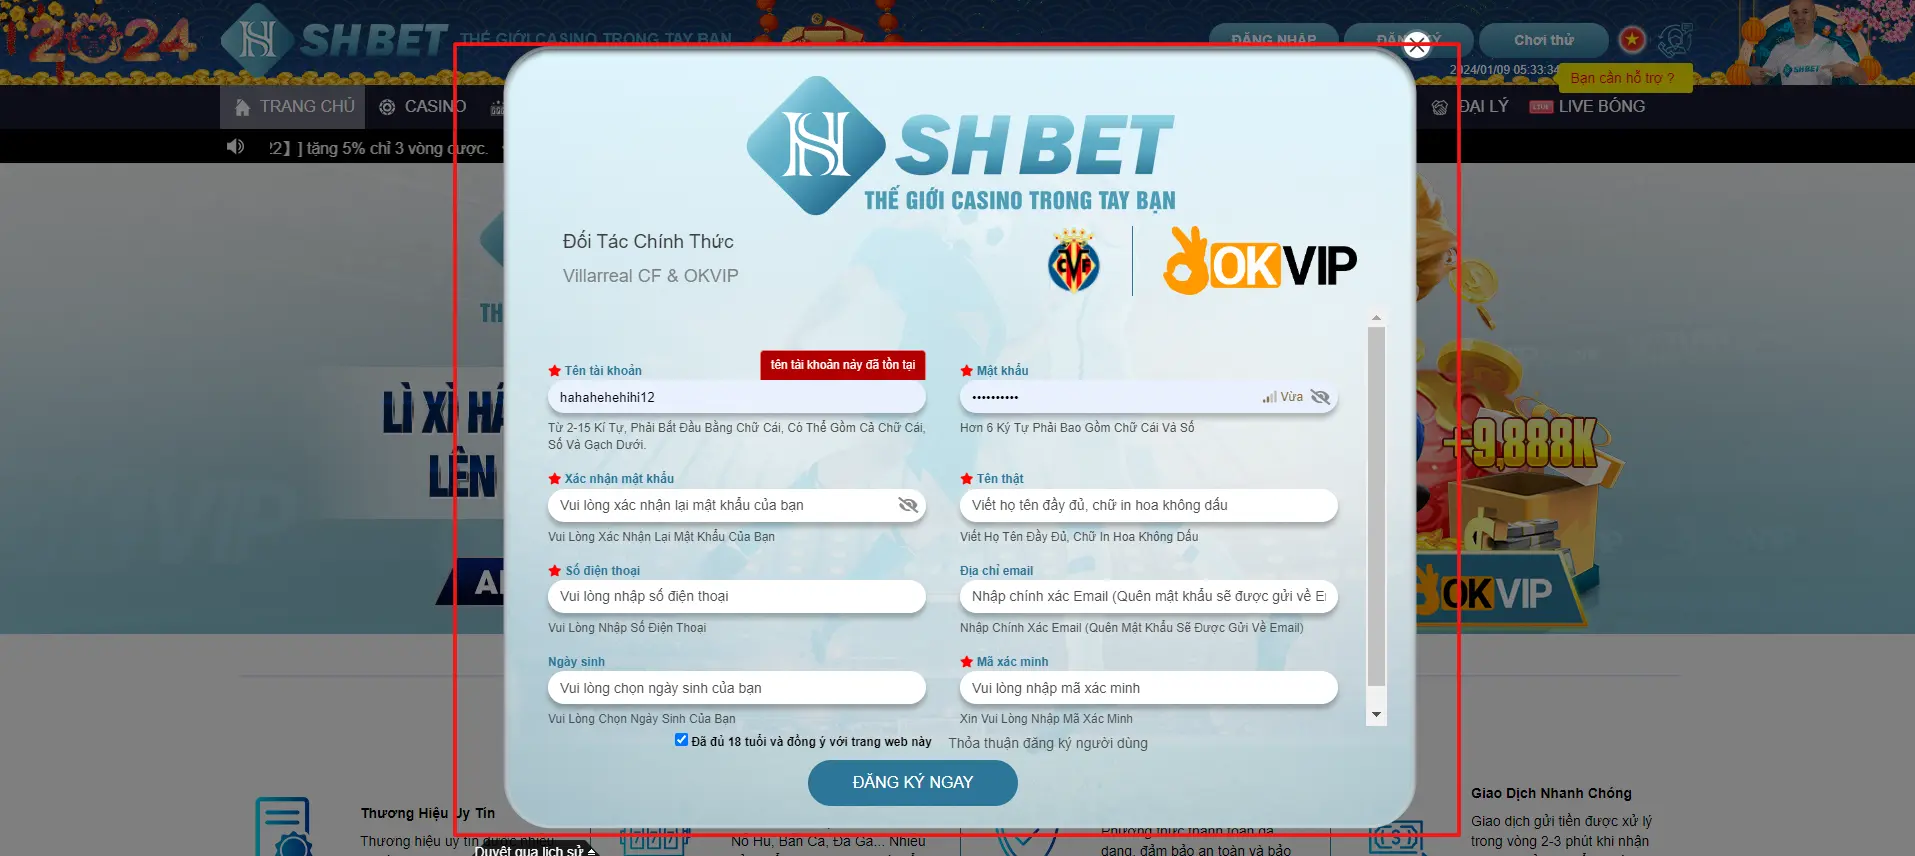 Giao diện bảng thông tin đăng ký SHBET 